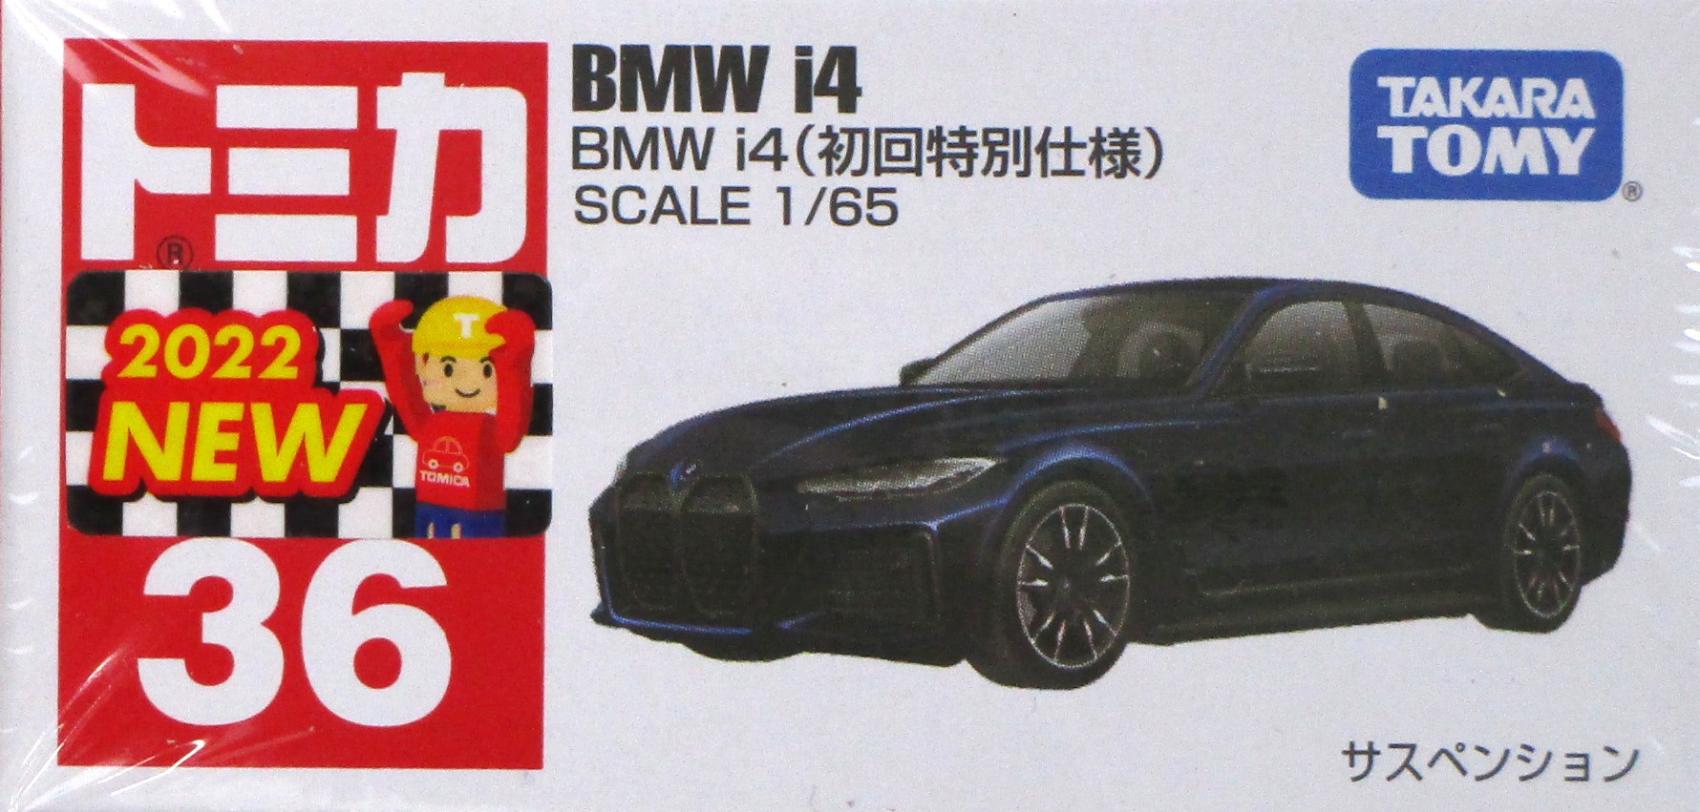 【中古】 タカラトミー トミカ No.36 BMW i4(ブラック・初回特別仕様) 【A】 未開封品 / 性質上、多少の塗装ムラ等はご容赦ください。